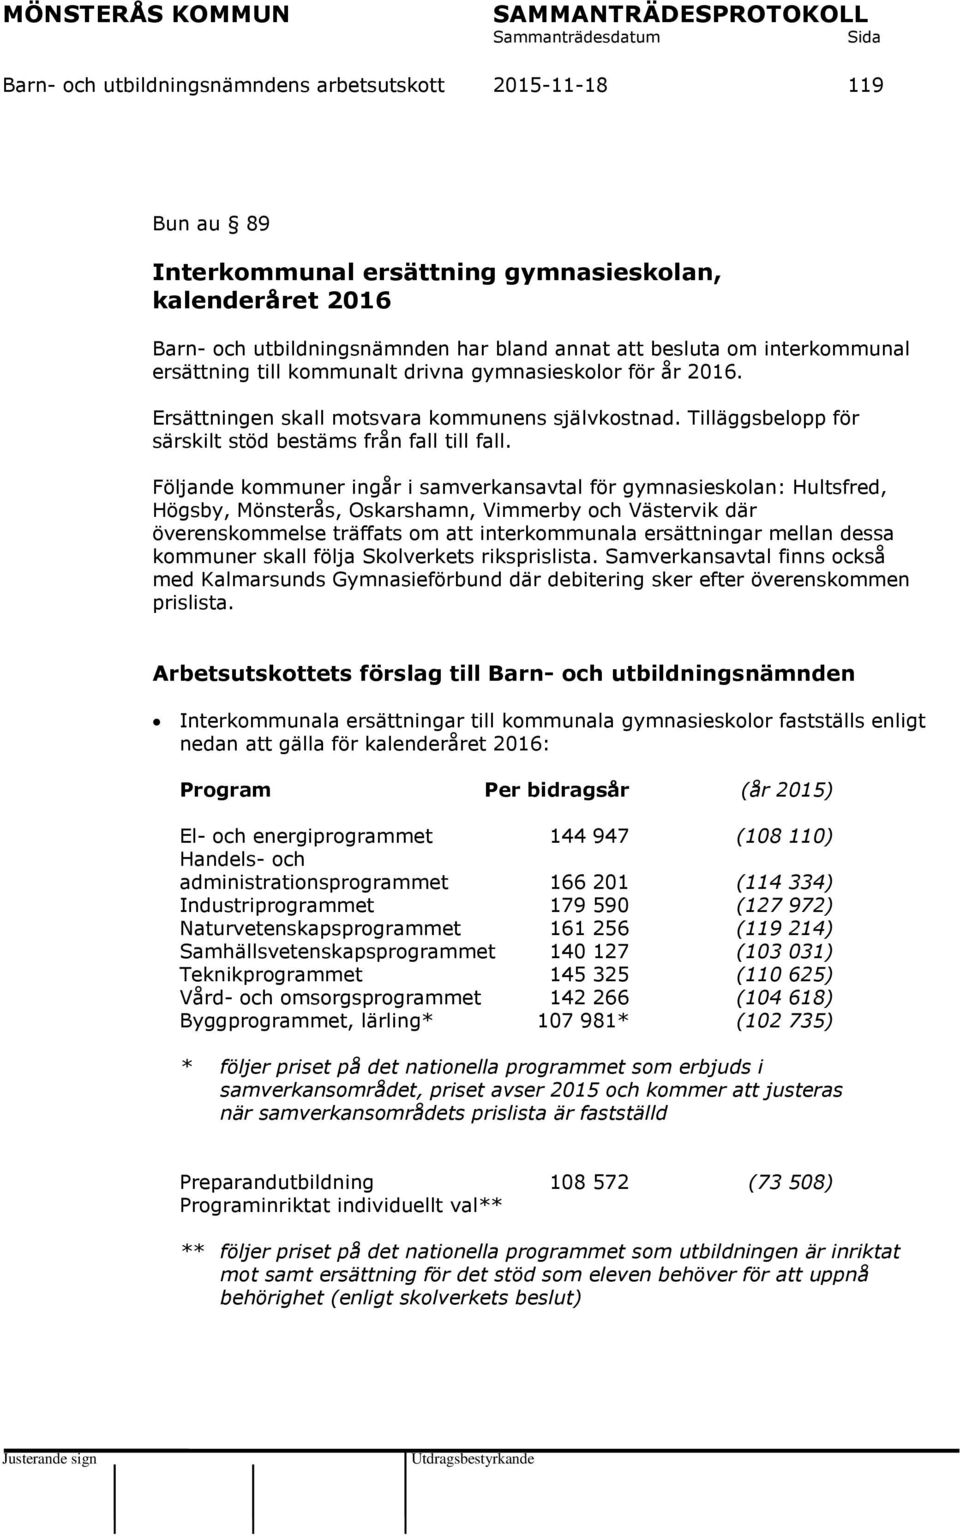 Följande kommuner ingår i samverkansavtal för gymnasieskolan: Hultsfred, Högsby, Mönsterås, Oskarshamn, Vimmerby och Västervik där överenskommelse träffats om att interkommunala ersättningar mellan